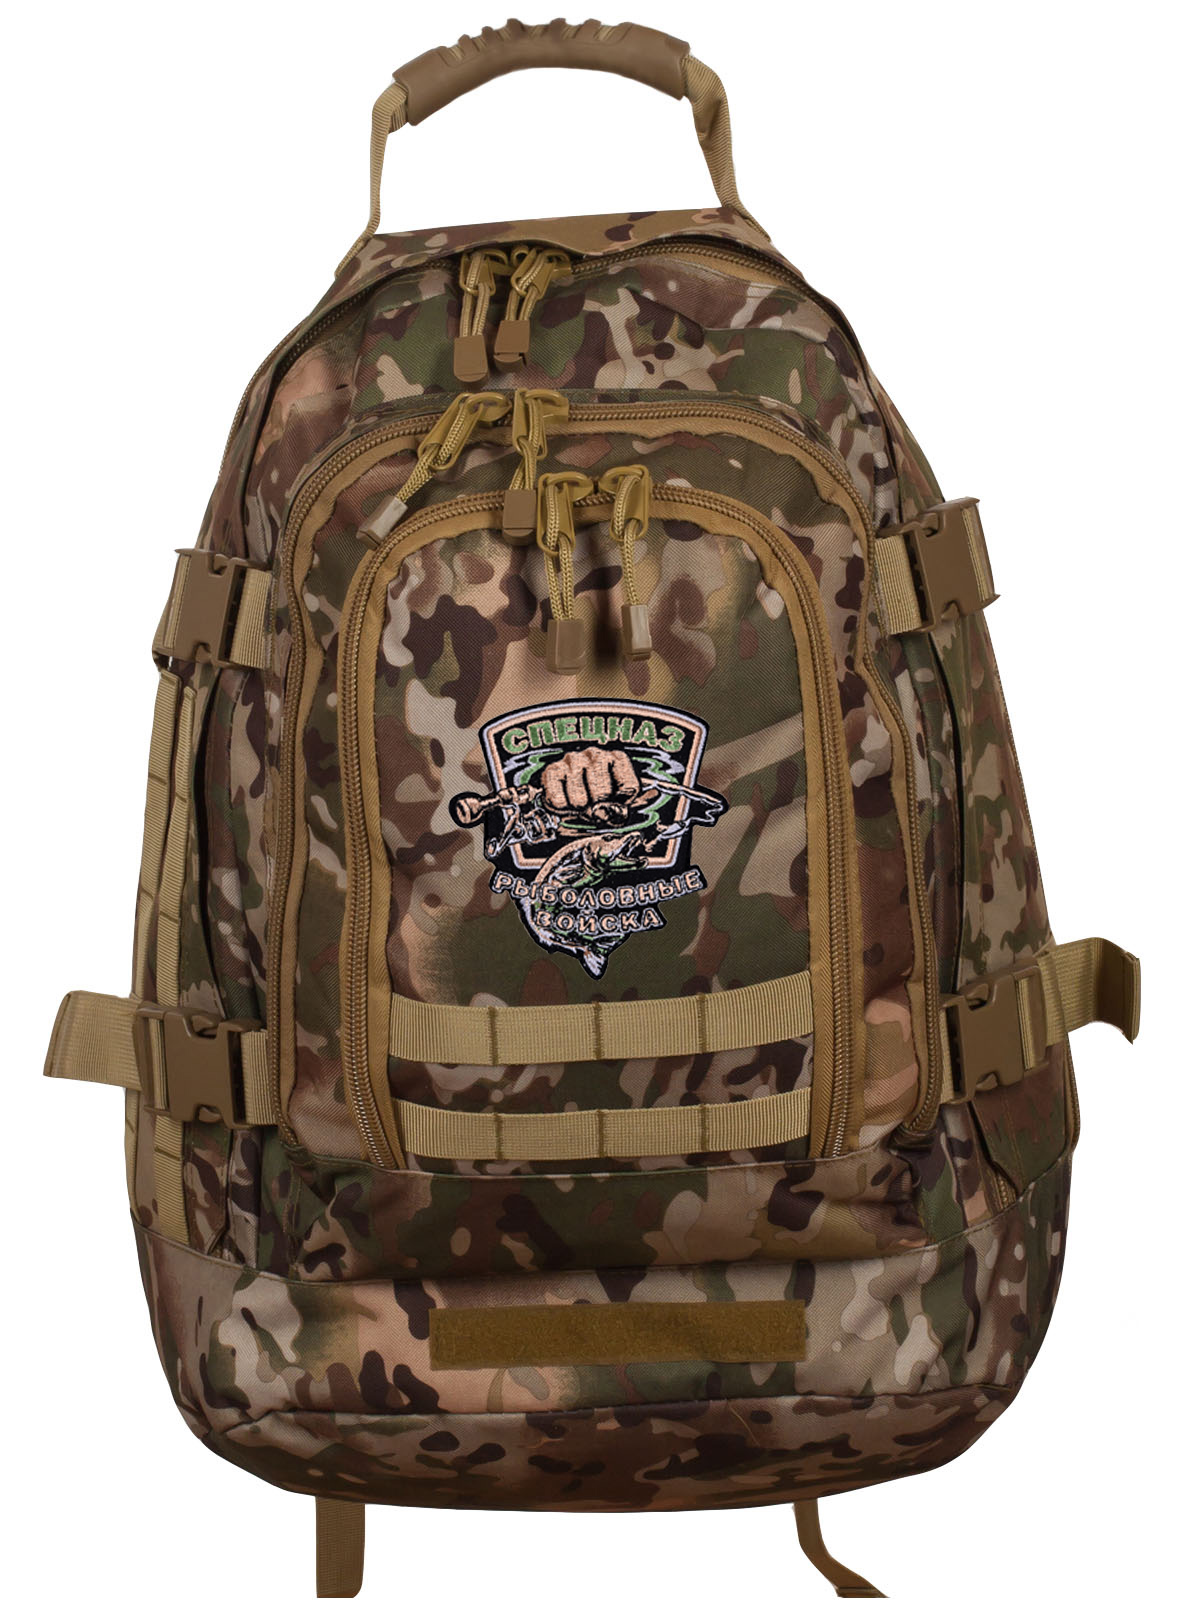 Тактический камуфляжный рюкзак с шевроном "Рыболовный спецназ"- купить оптом и в розницу